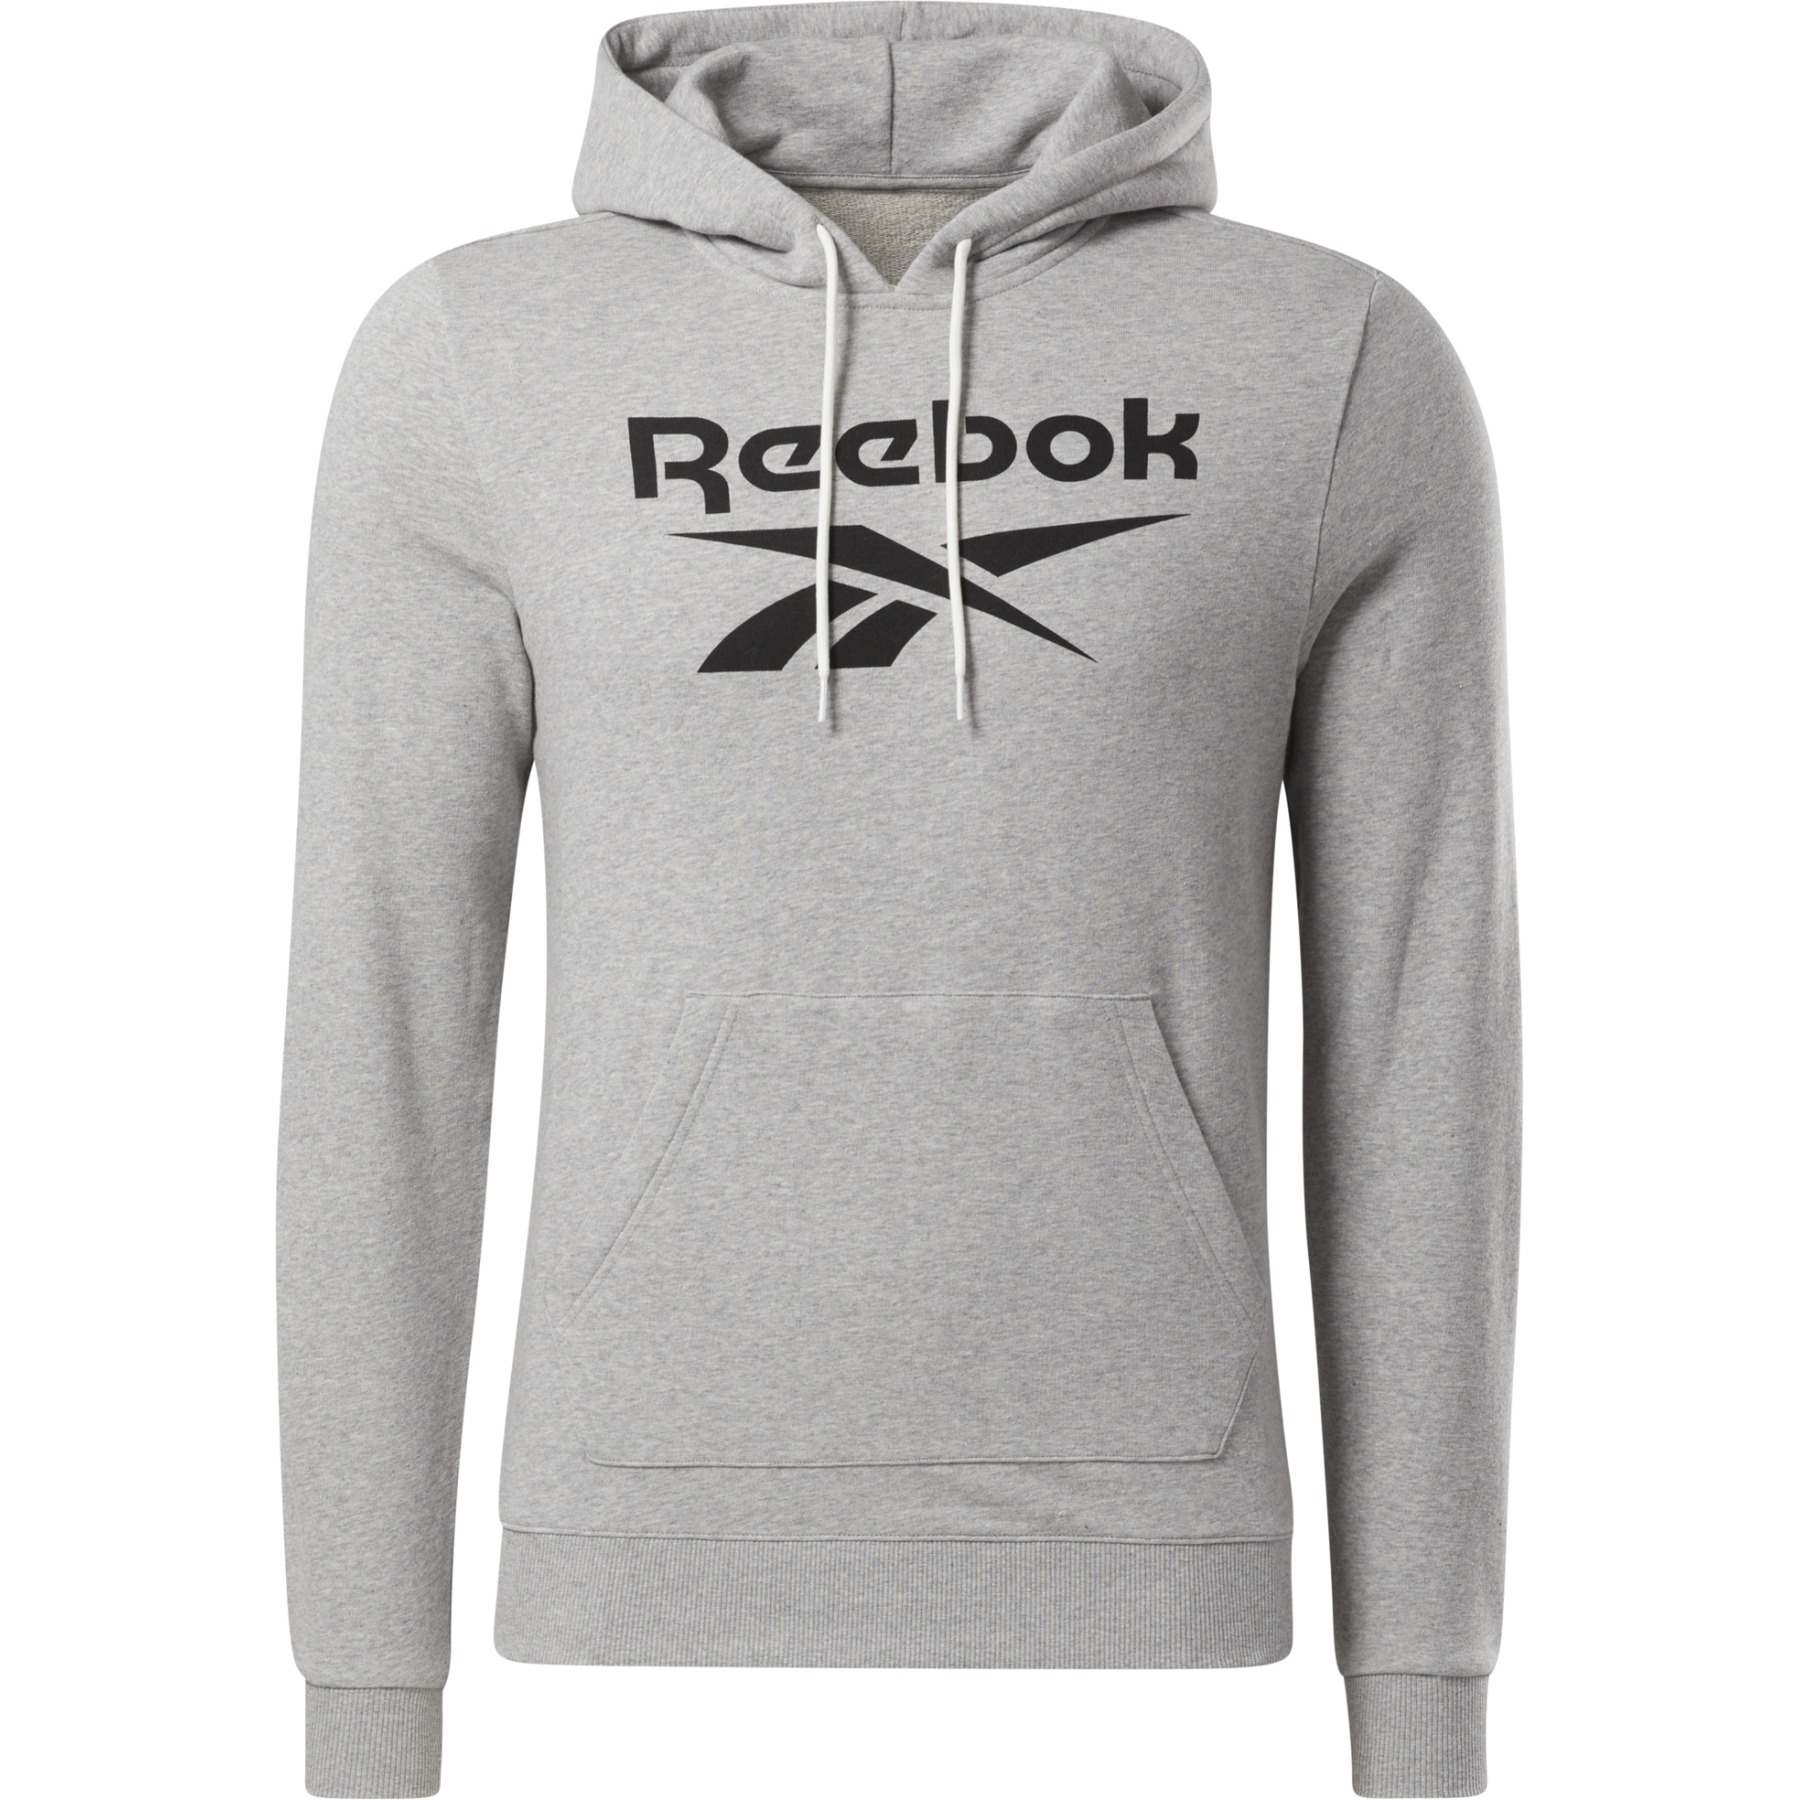 Produktbild von Reebok Identity Big Logo Herren French Terry Kapuzenpullover - medium grey heather/schwarz